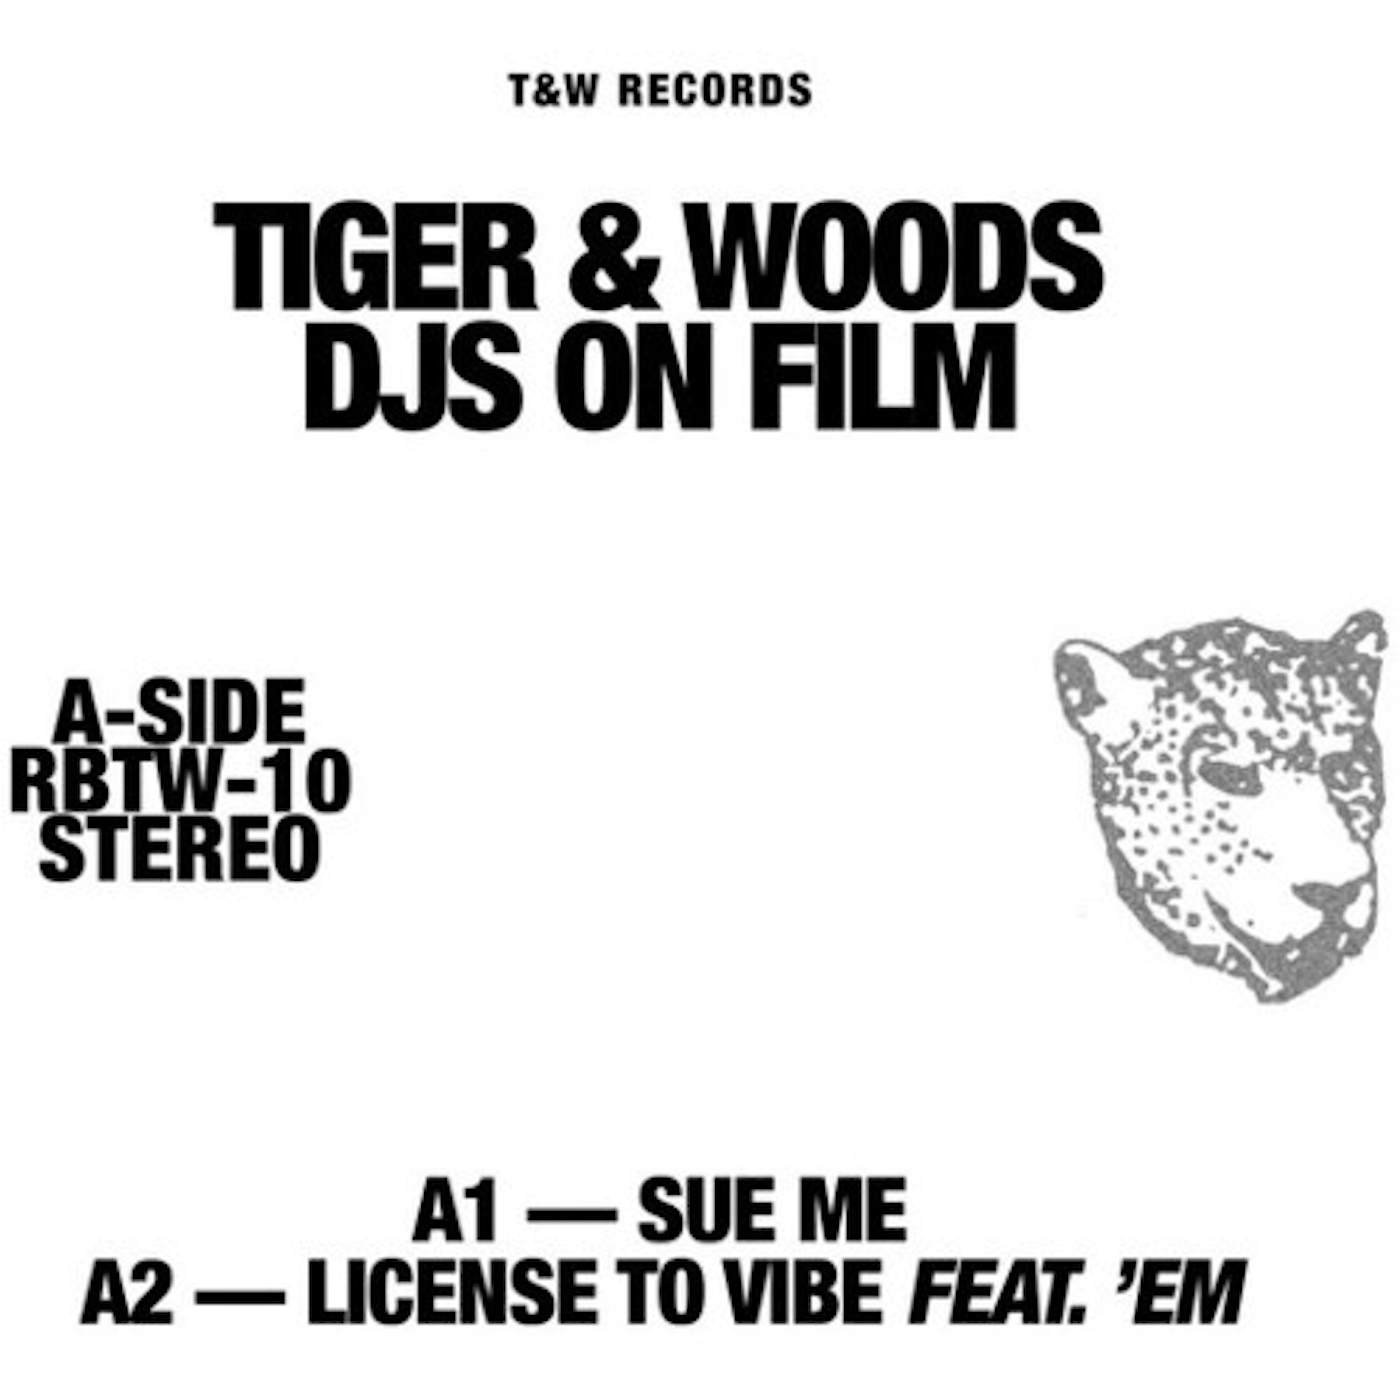 Tiger & Woods Djs On Film (12") Vinyl Record